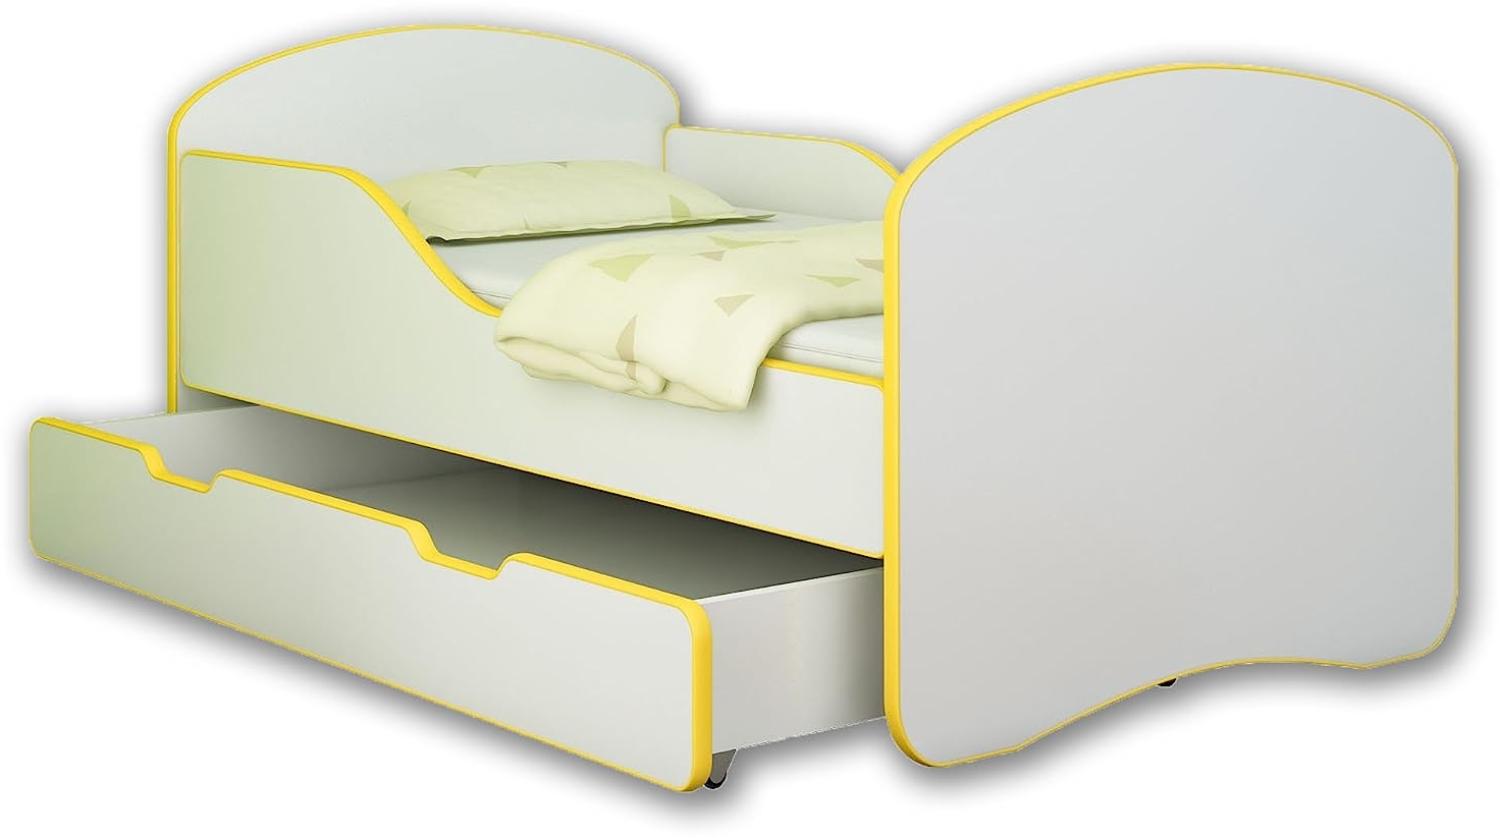 Jugendbett Kinderbett mit einer Schublade und Matratze Weiß ACMA I 140 160 180 (140x70 cm + Schublade, Gelb) Bild 1